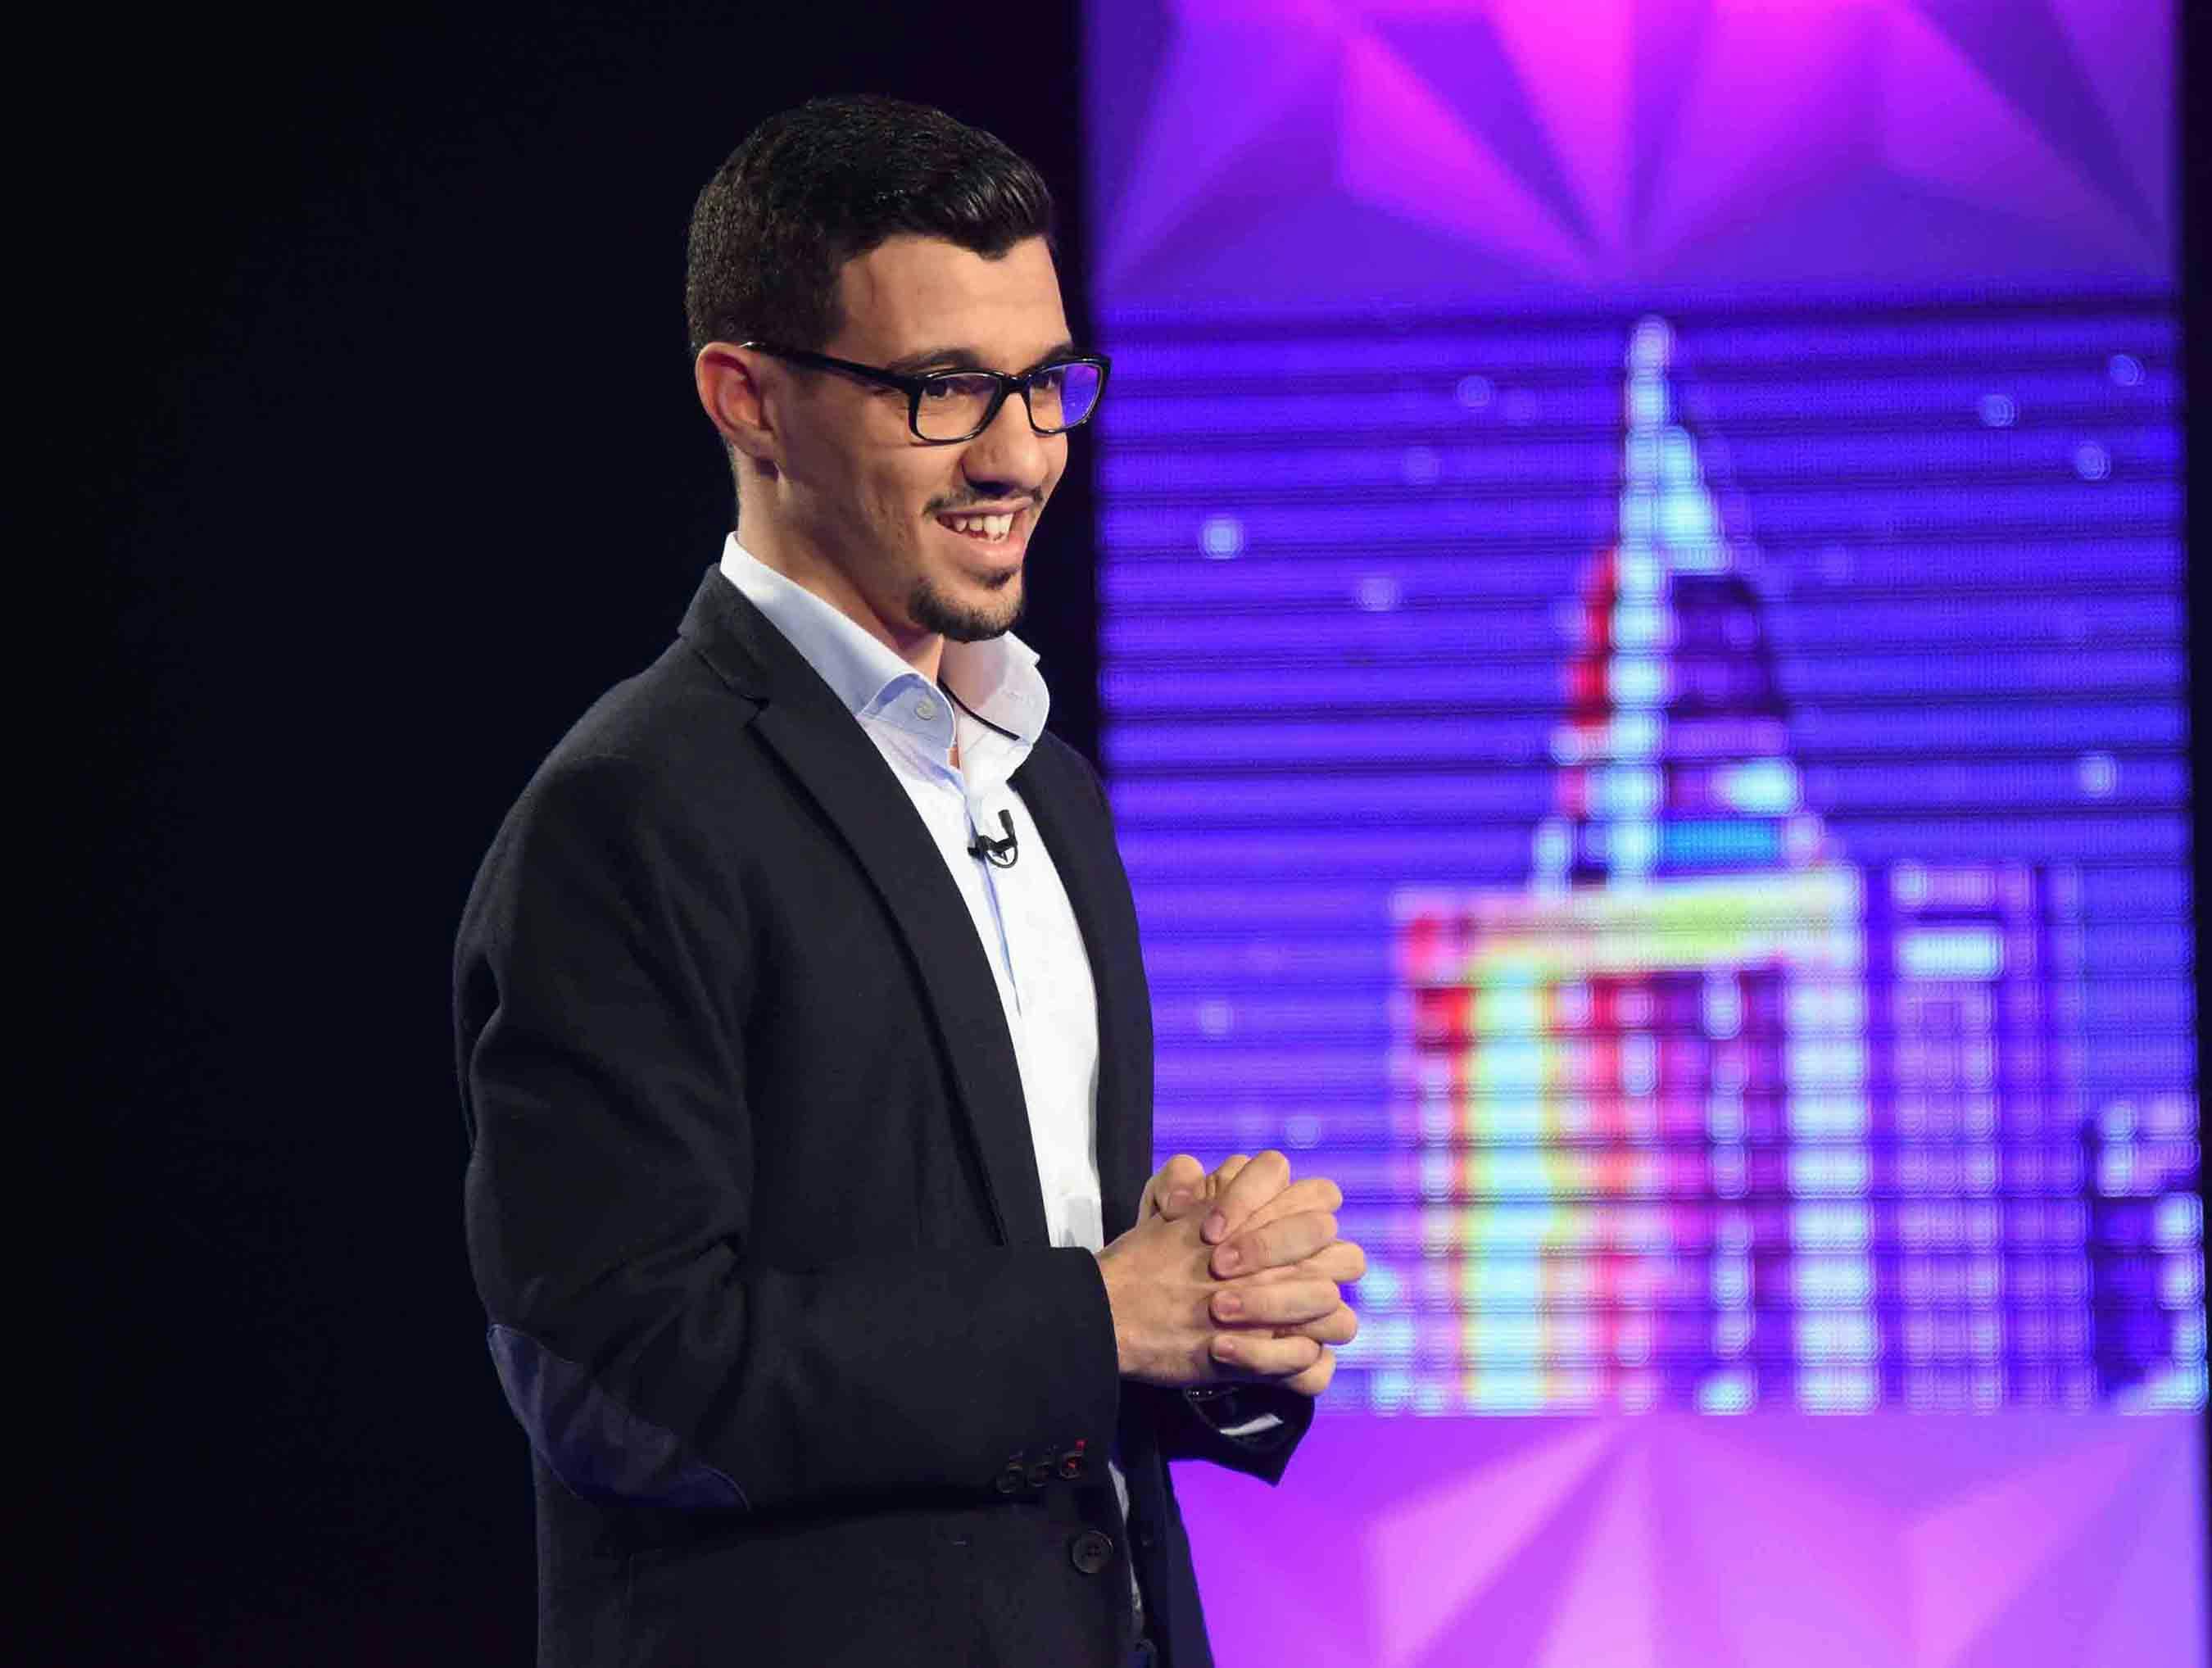 Le jeune inventeur, Ahmed Zahlan, nous raconte son passage glorieux à « Stars of Science »